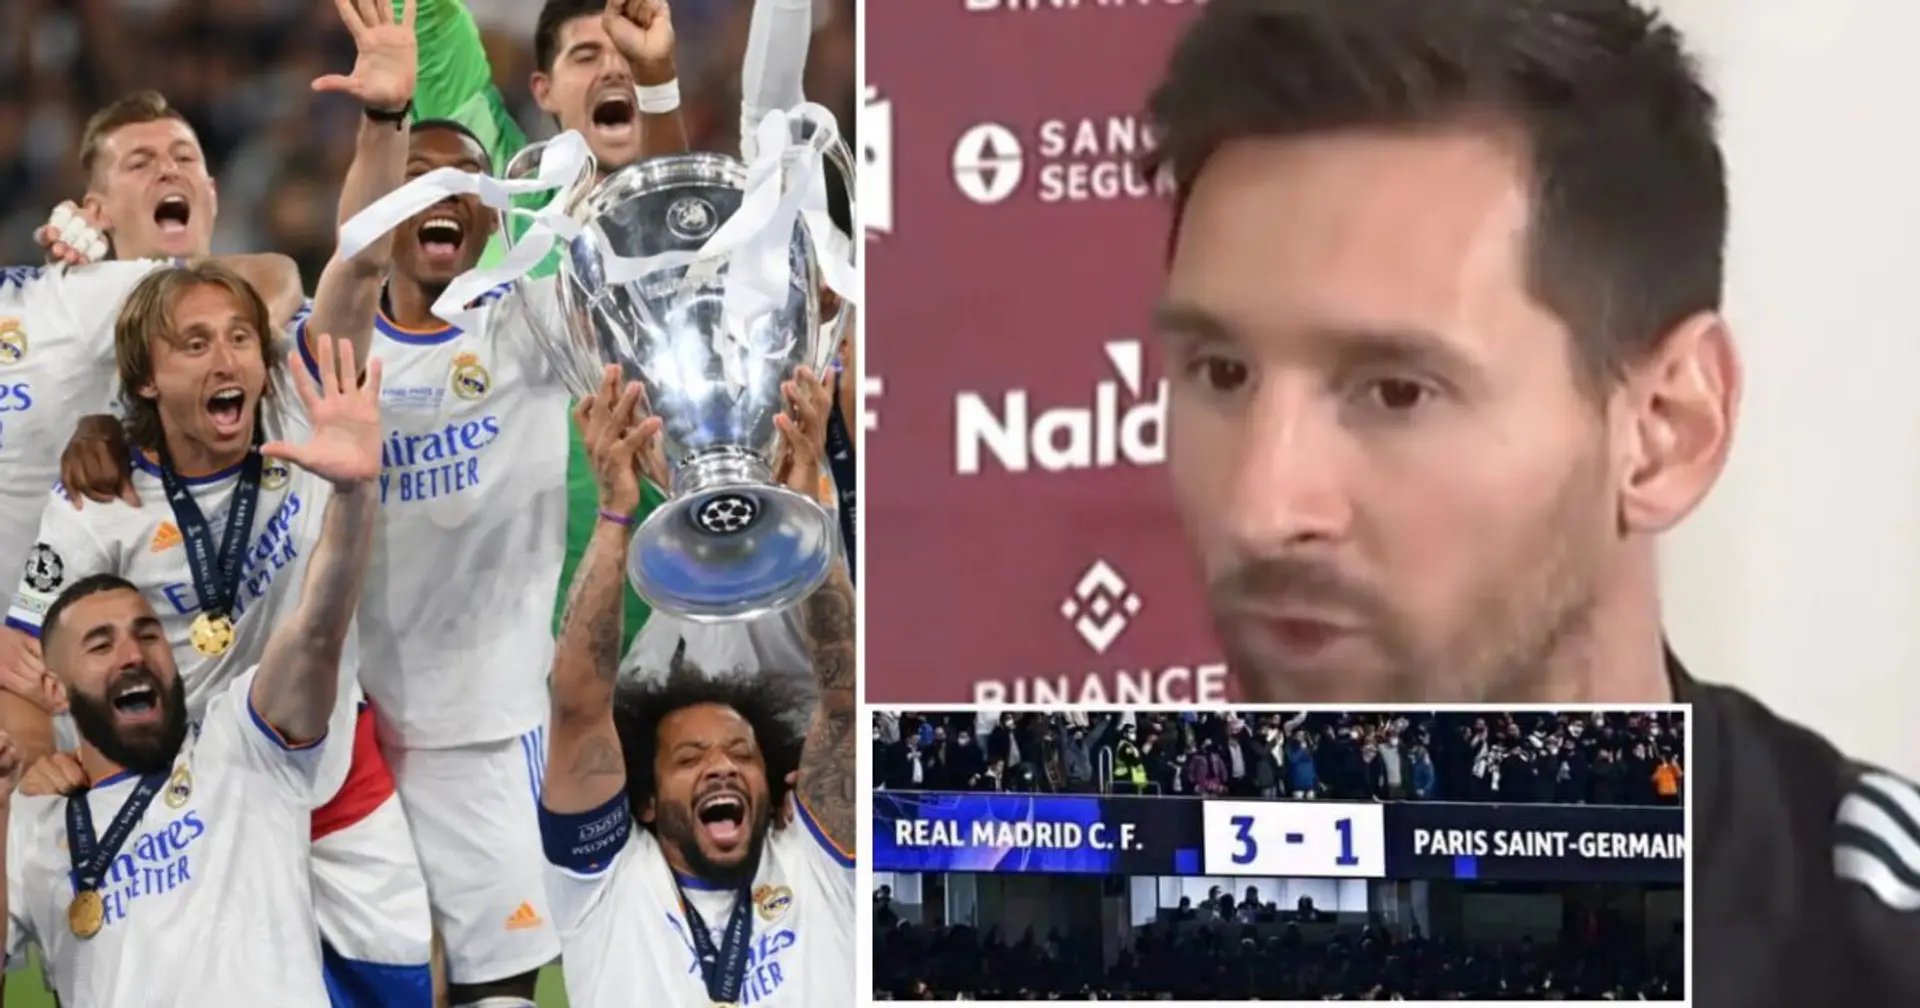 Lionel Messi: Real Madrid war nicht die beste Mannschaft in dieser Champions League, bei allem Respekt. Ich kenne Real Madrid sehr gut